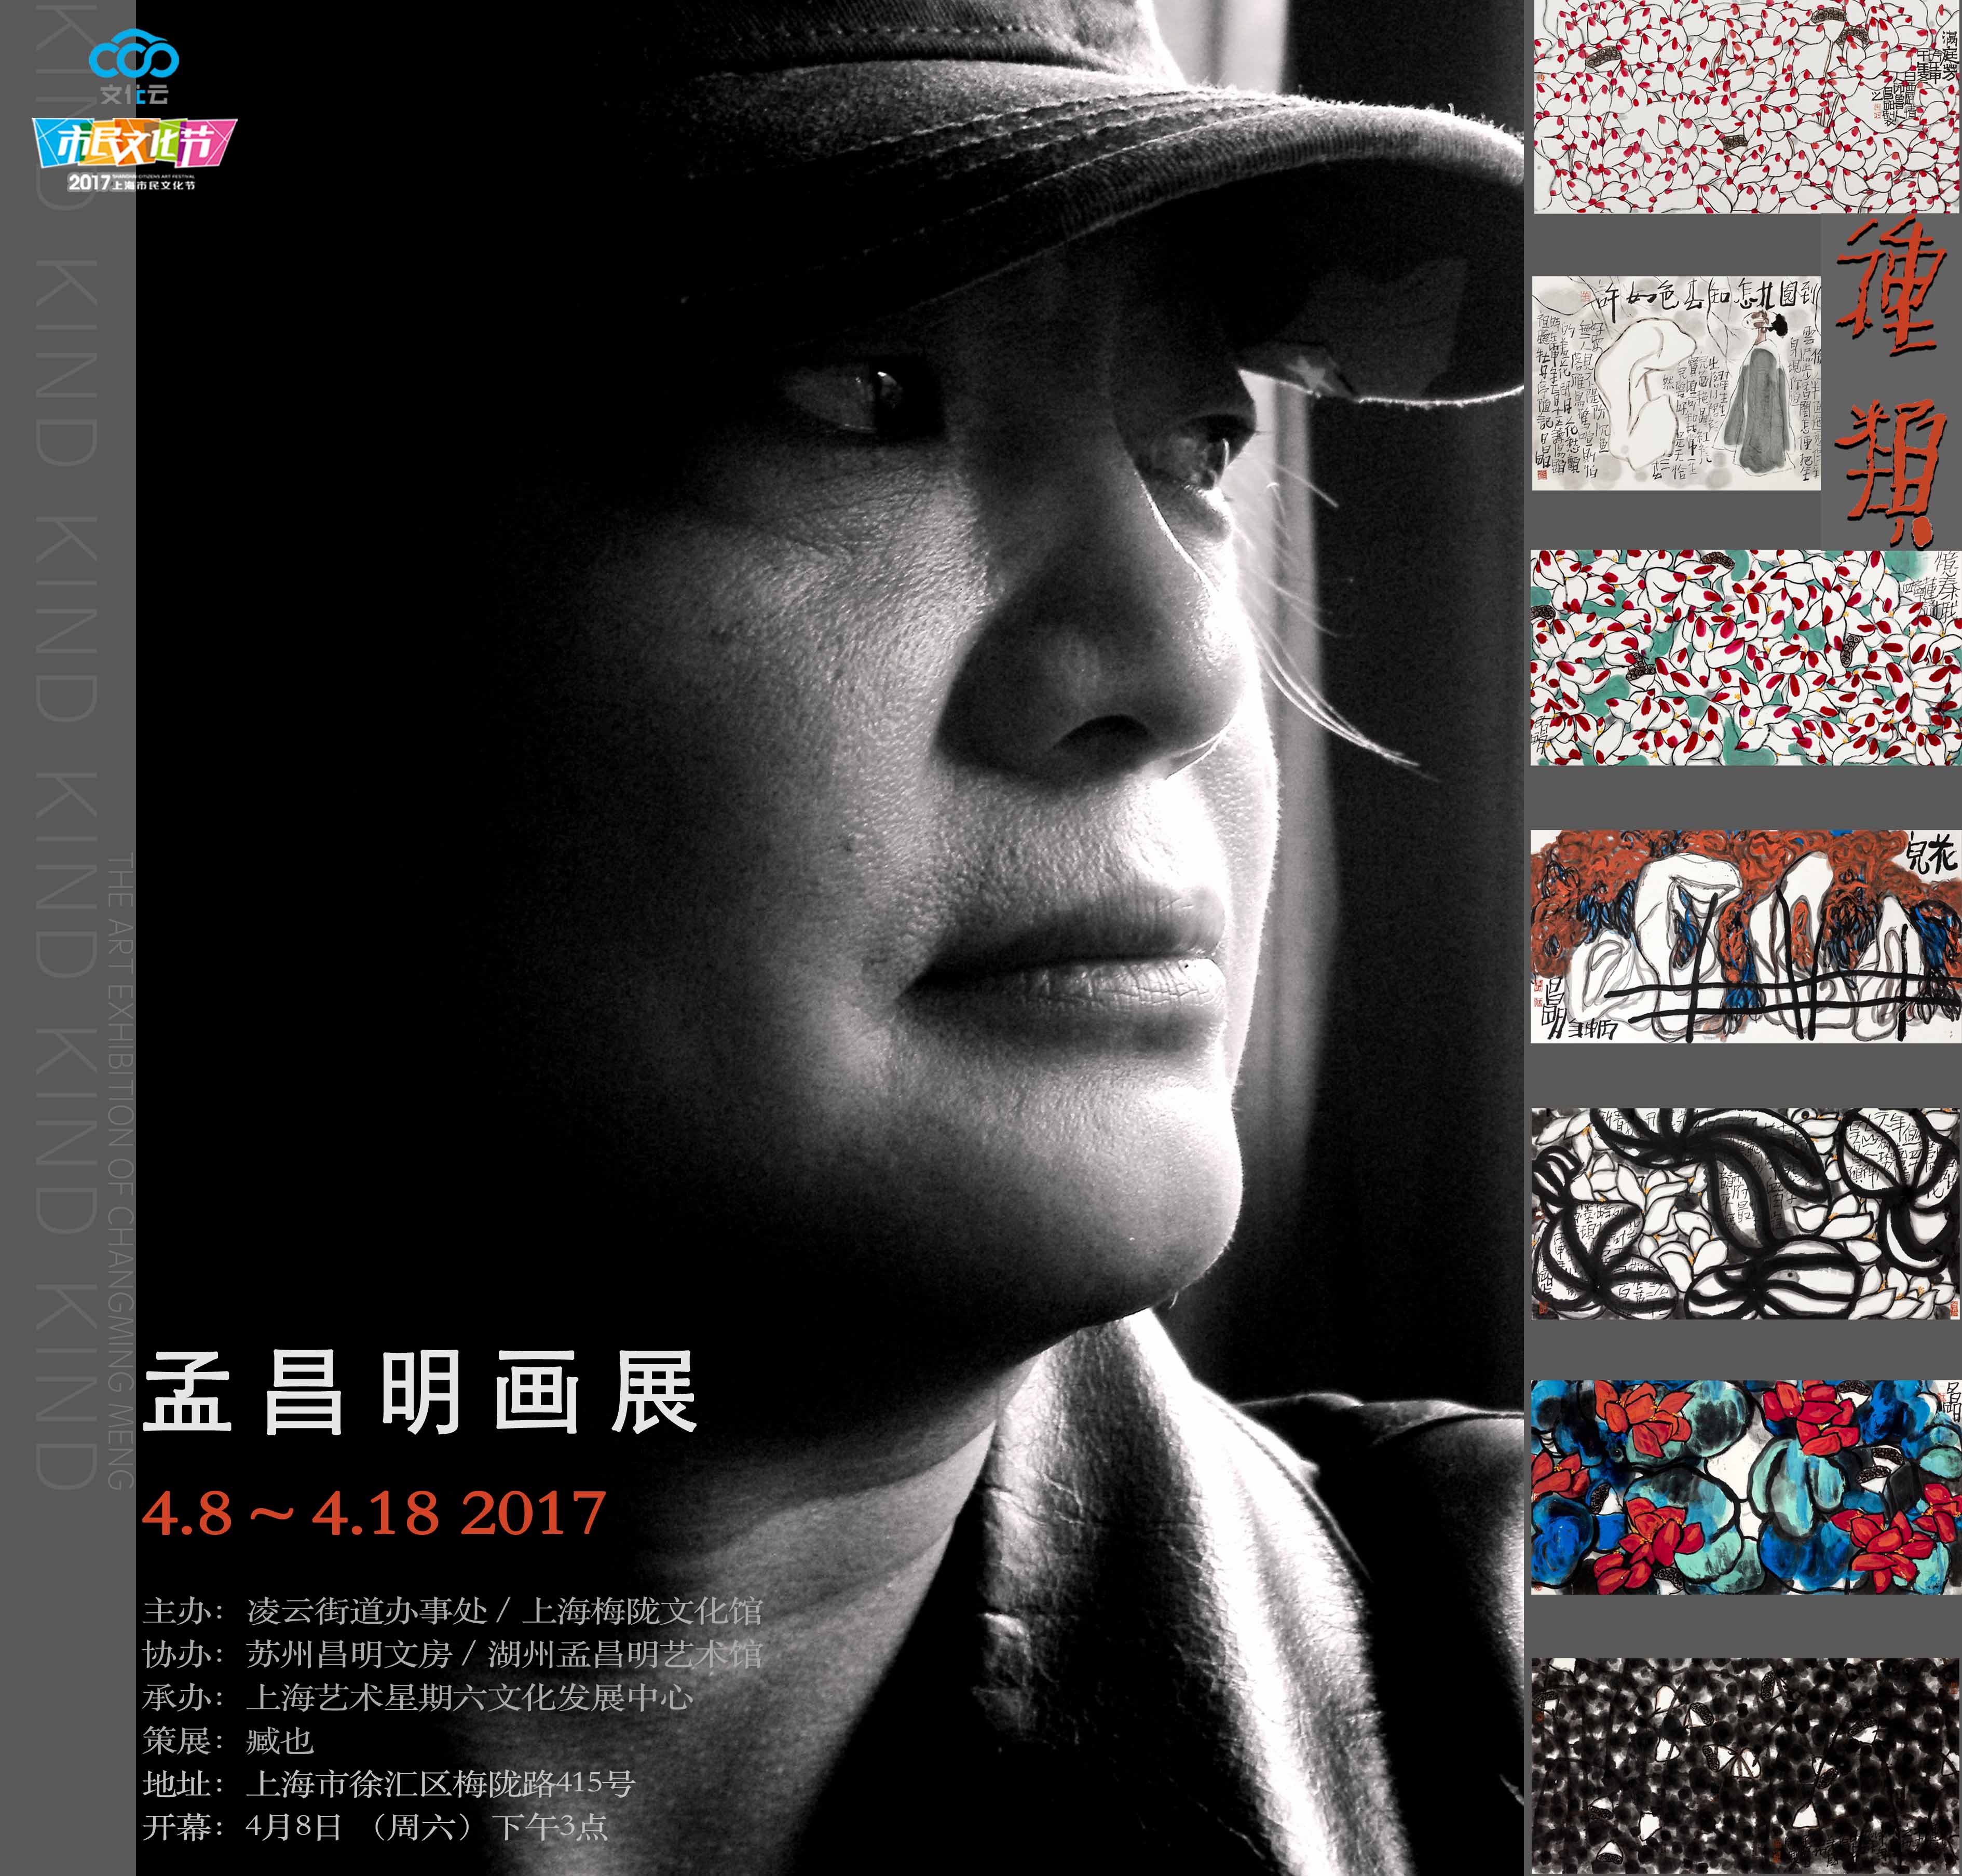 美籍著名画家孟昌明展览《种类》4月8日在上海展出